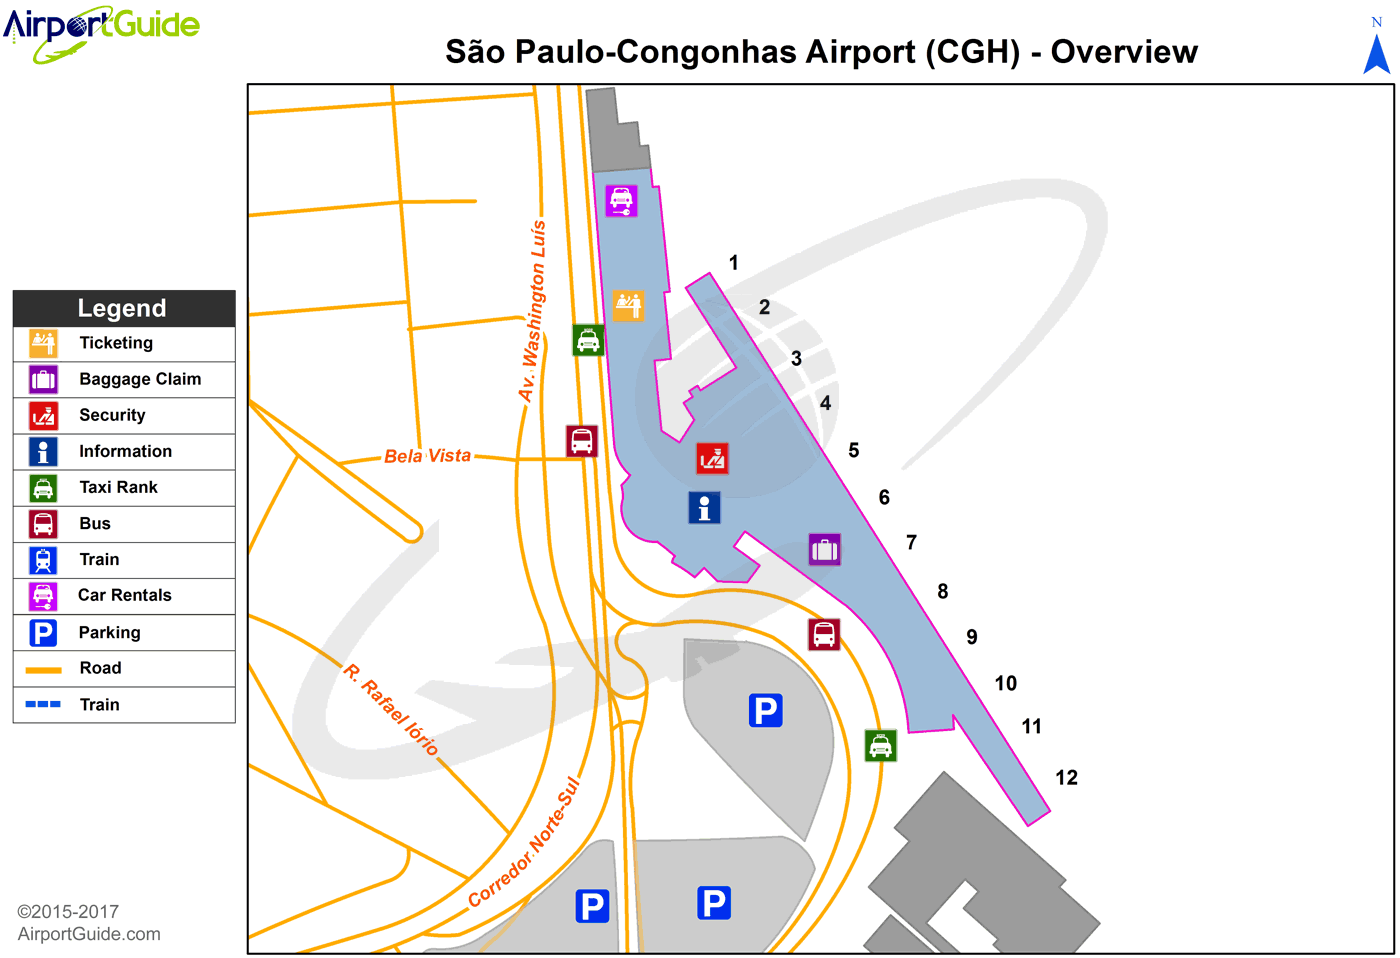 São Paulo - São Paulo-Congonhas (CGH) Airport Terminal Map - Overview